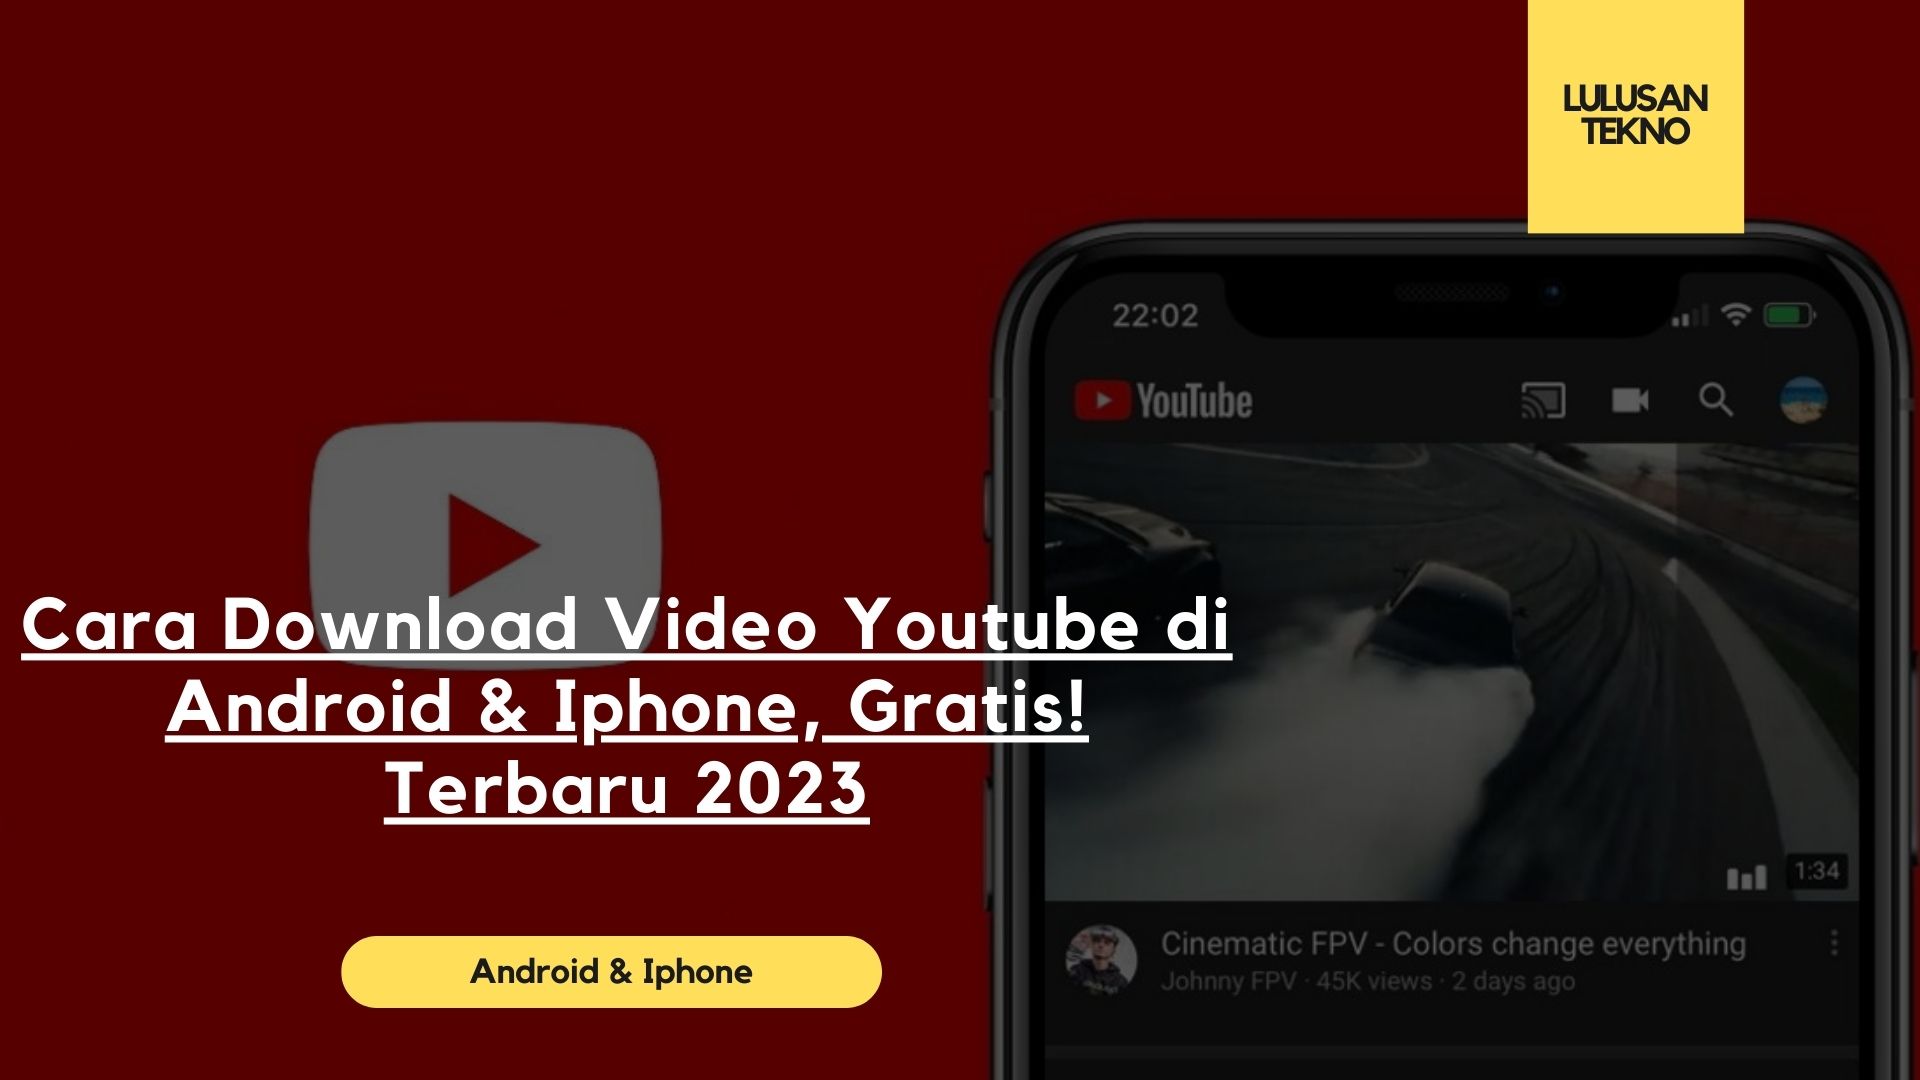 Cara Download Video Youtube di Android & Iphone, Gratis! Terbaru 2023